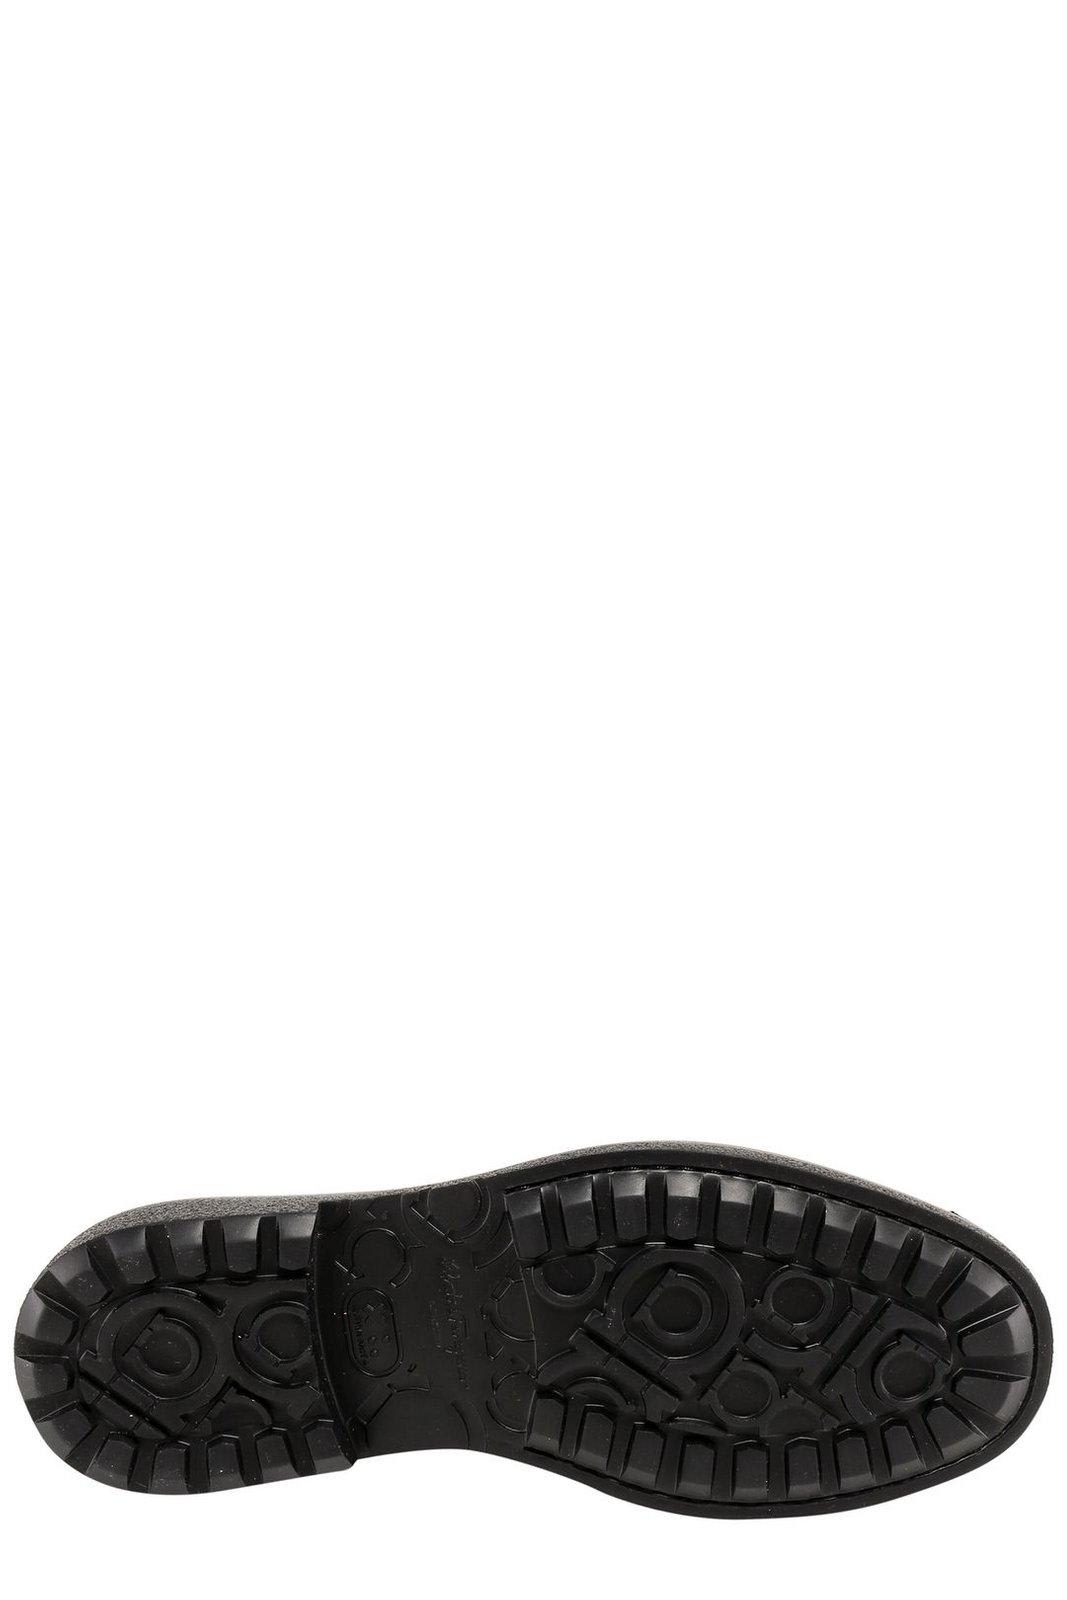 Shop Ferragamo Slip-on Penny Loafers In Black